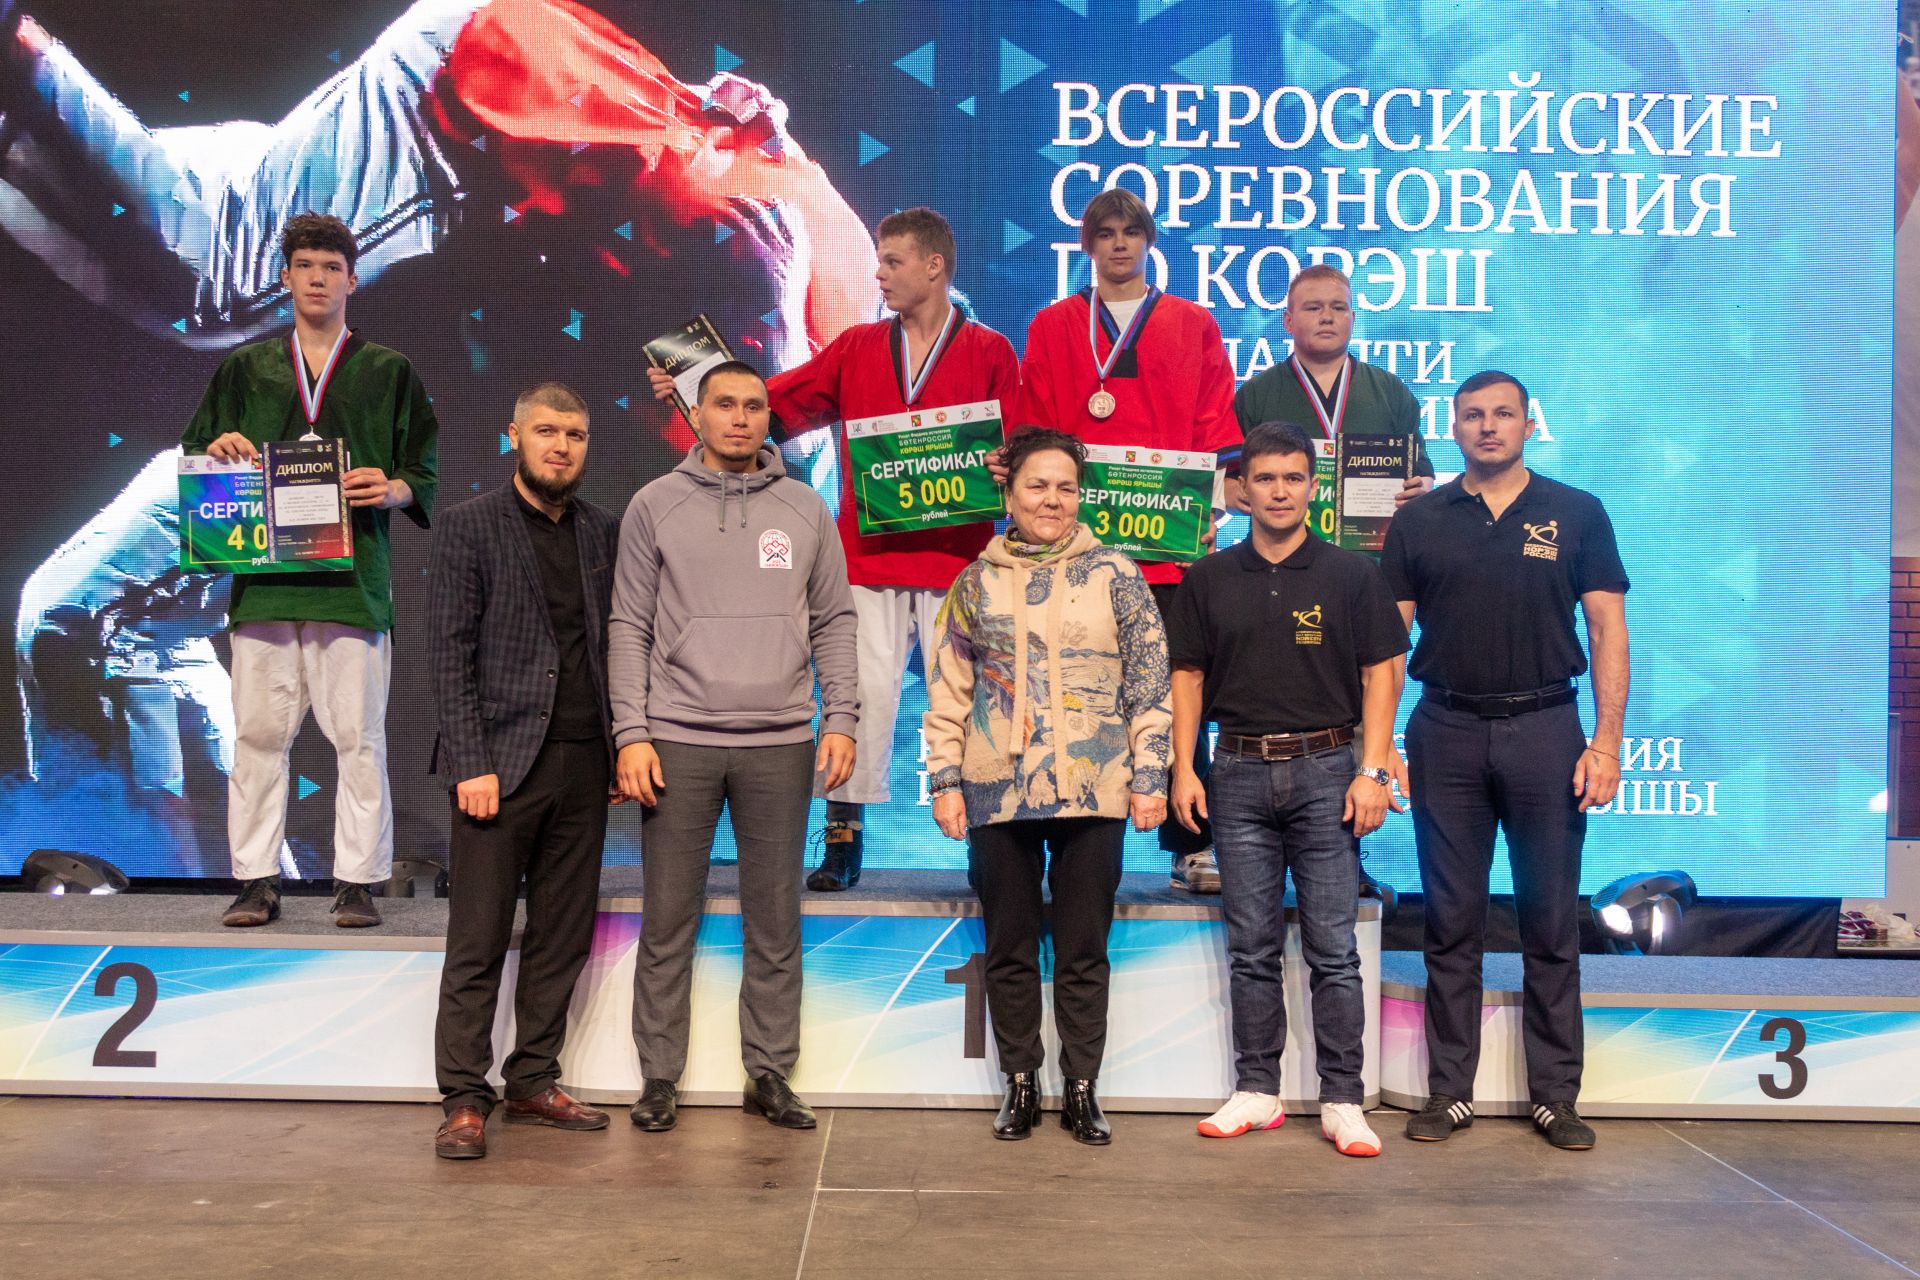 Заинские борцы принесли району победу во всероссийских соревнованиях по корэш